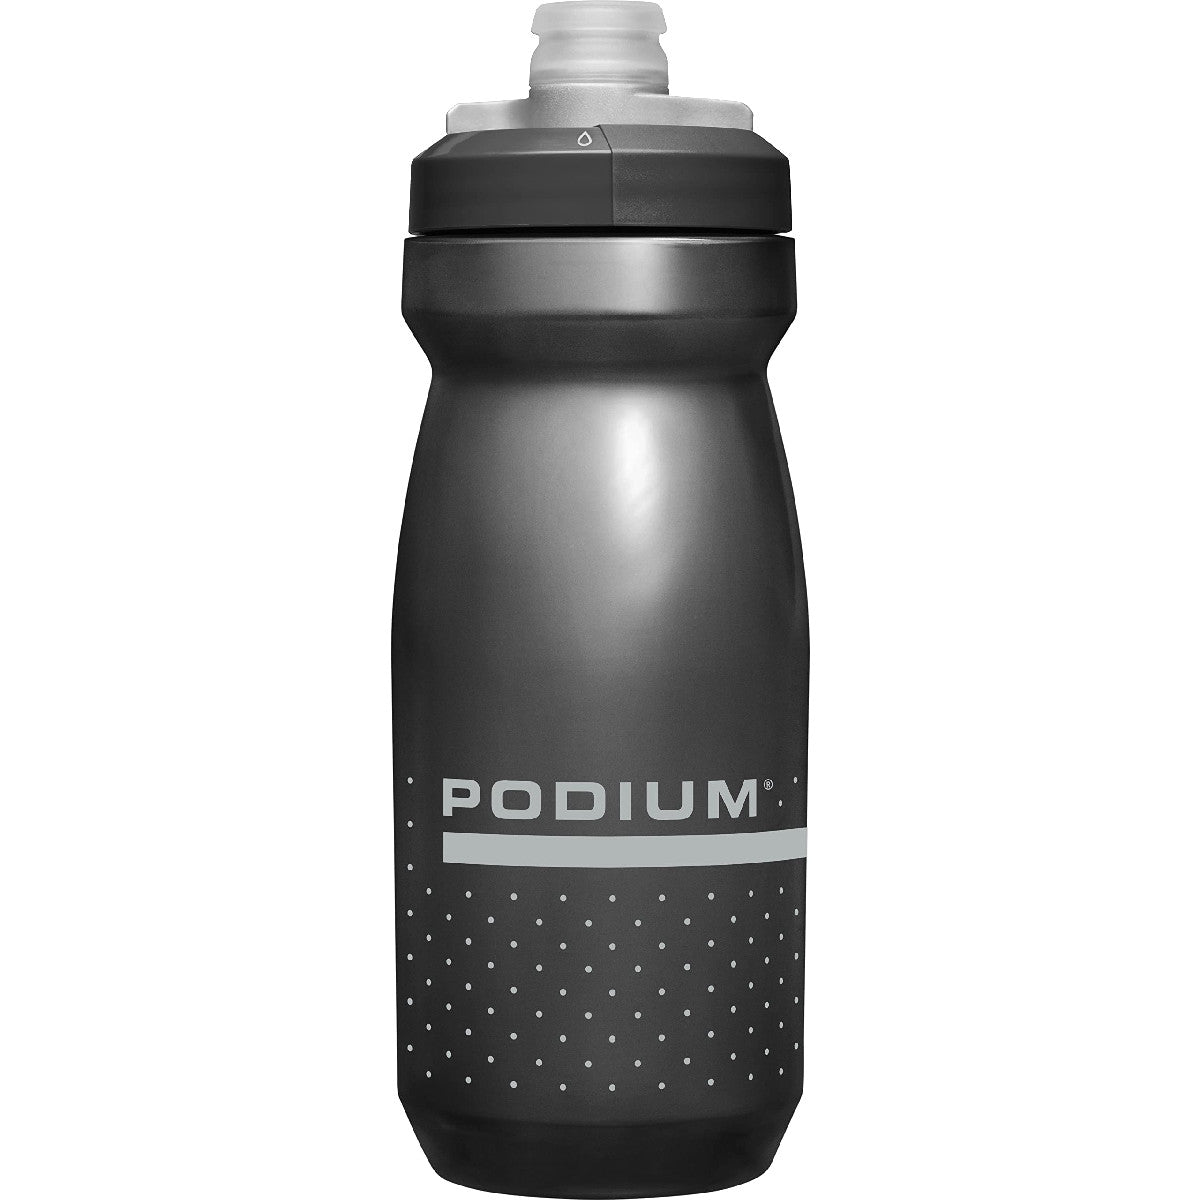 CamelBak Podium Water Bottle Black 21oz Water Bottles & Hydration Packs